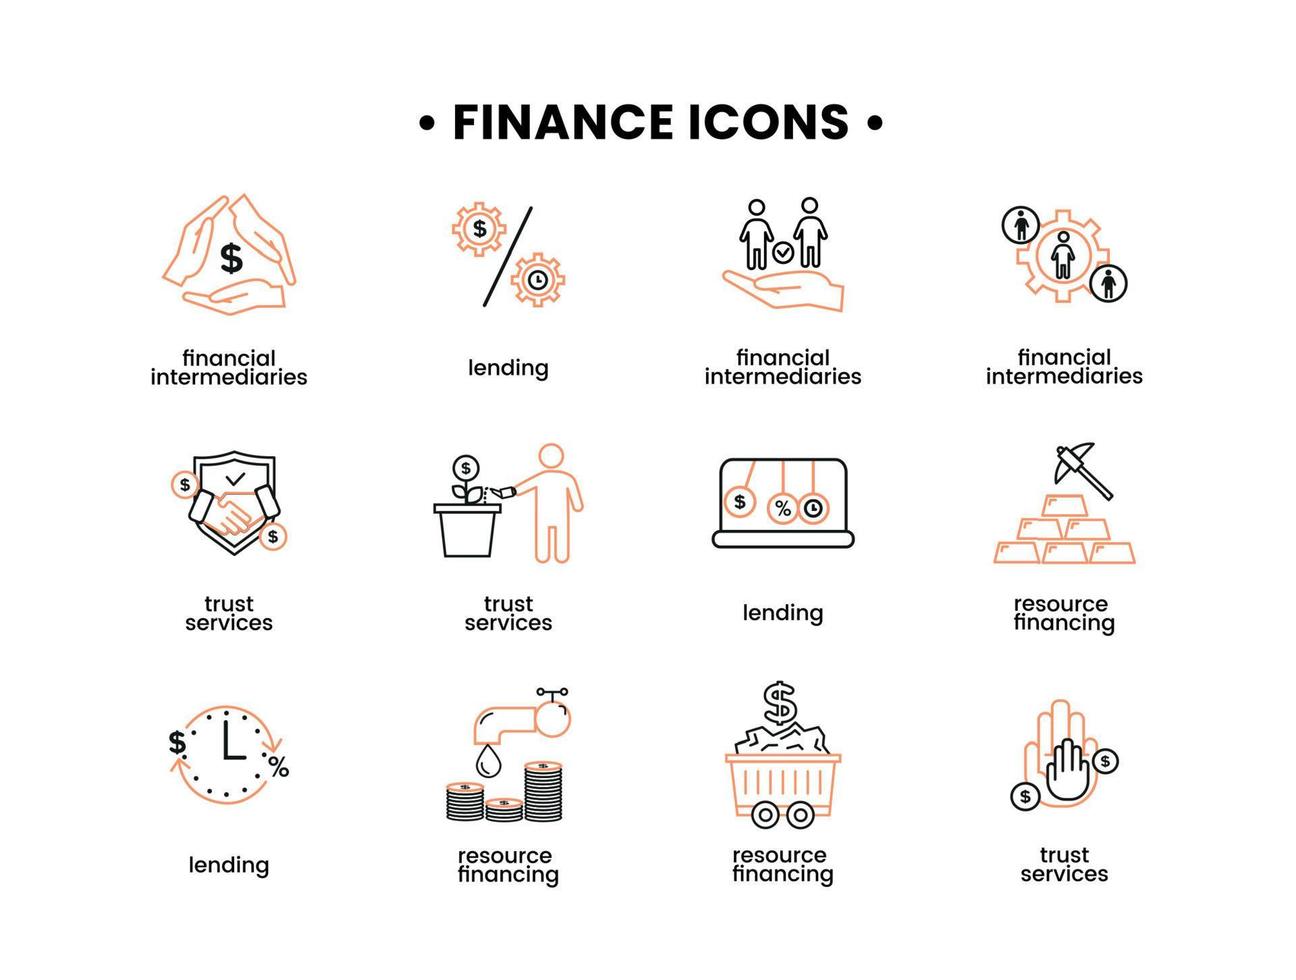 finansiera ikoner uppsättning. vektor illustration av finansiell mellanhand ikoner, resurs finansiering, förtroende tjänster, utlåning.